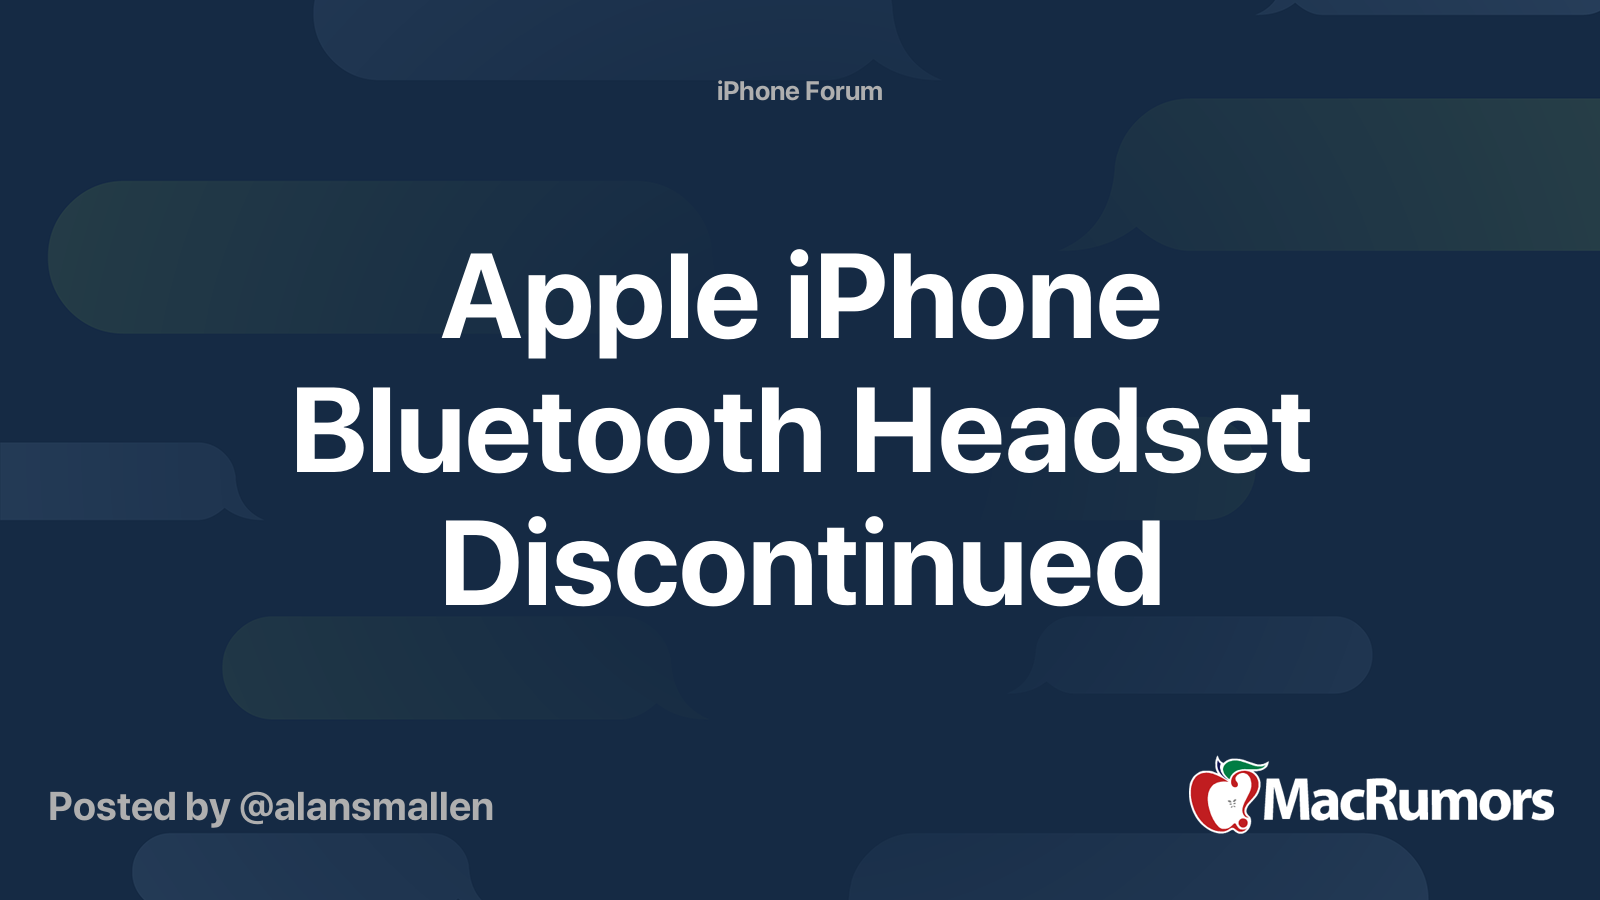 枚数限定! iPhone Bluetooth Headset MB536LL/A 希少品 ...